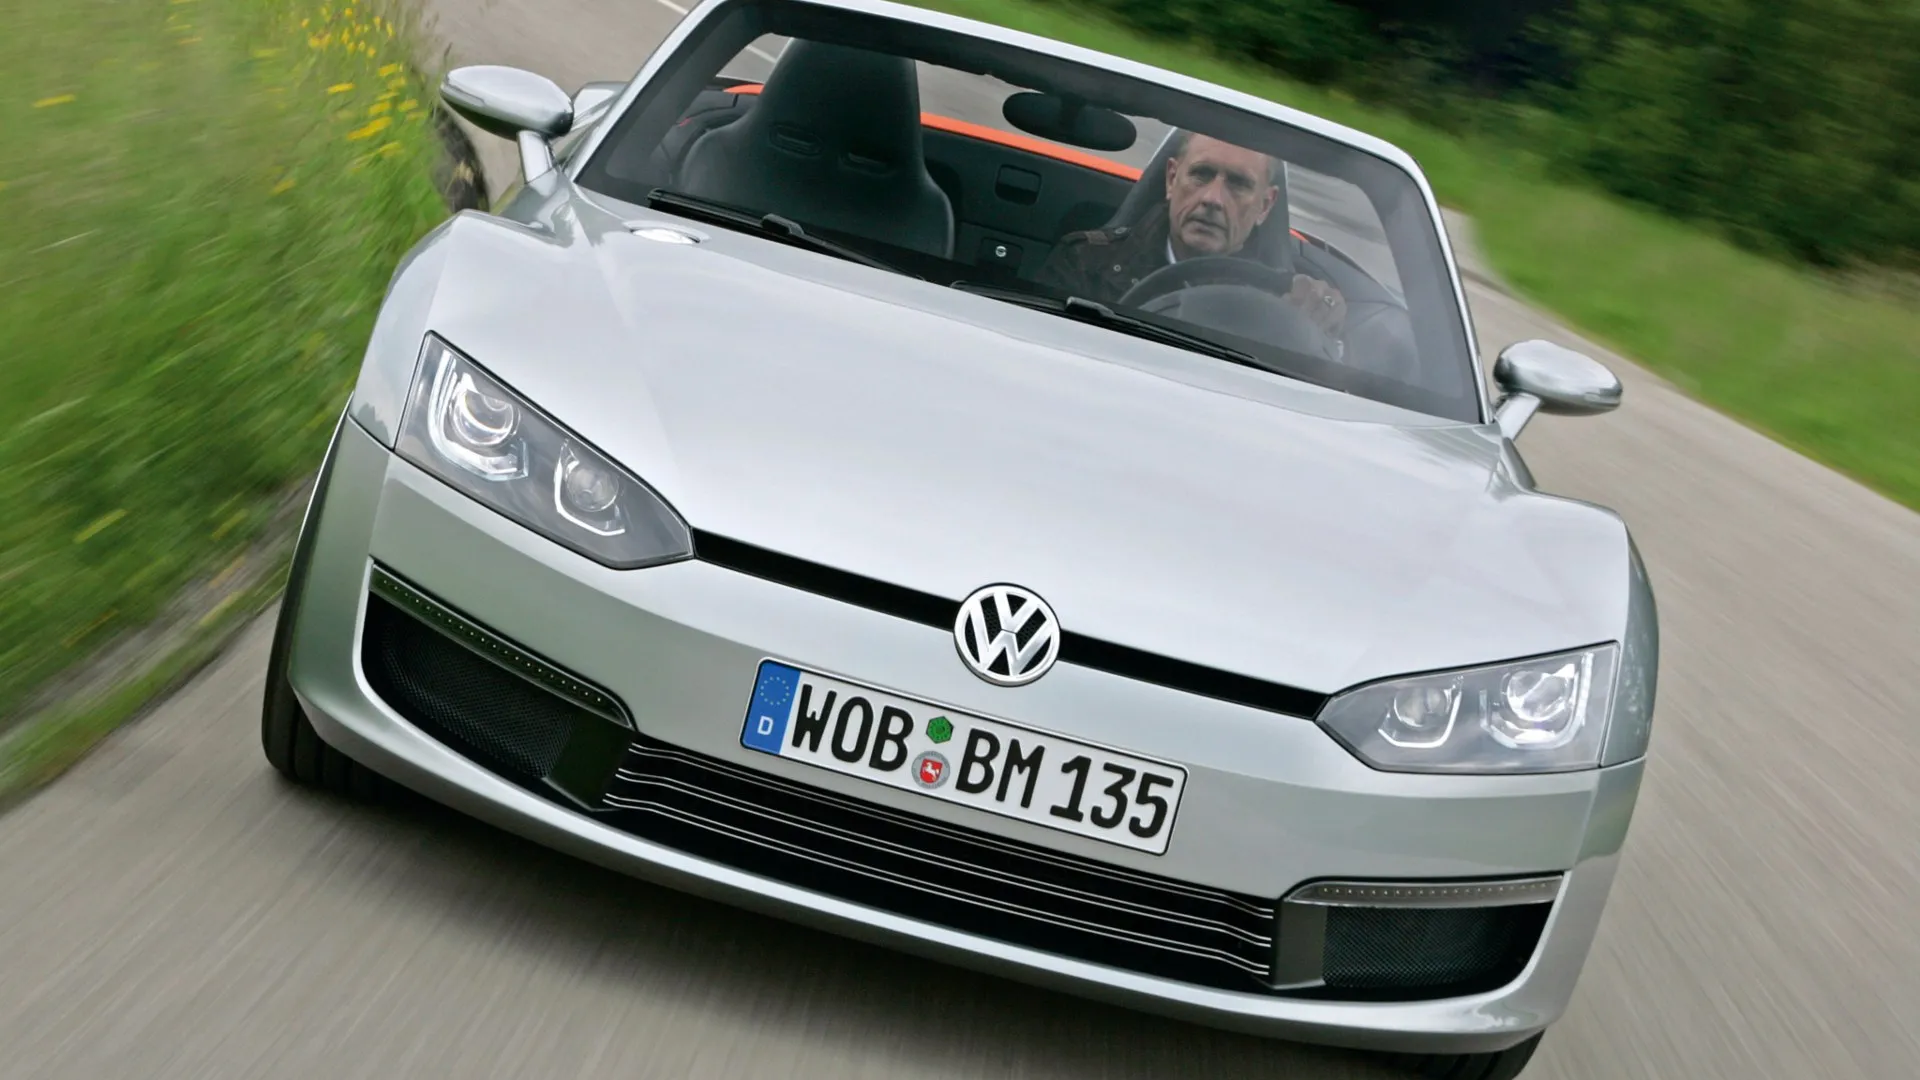 Coche del día: Volkswagen Concept BlueSport